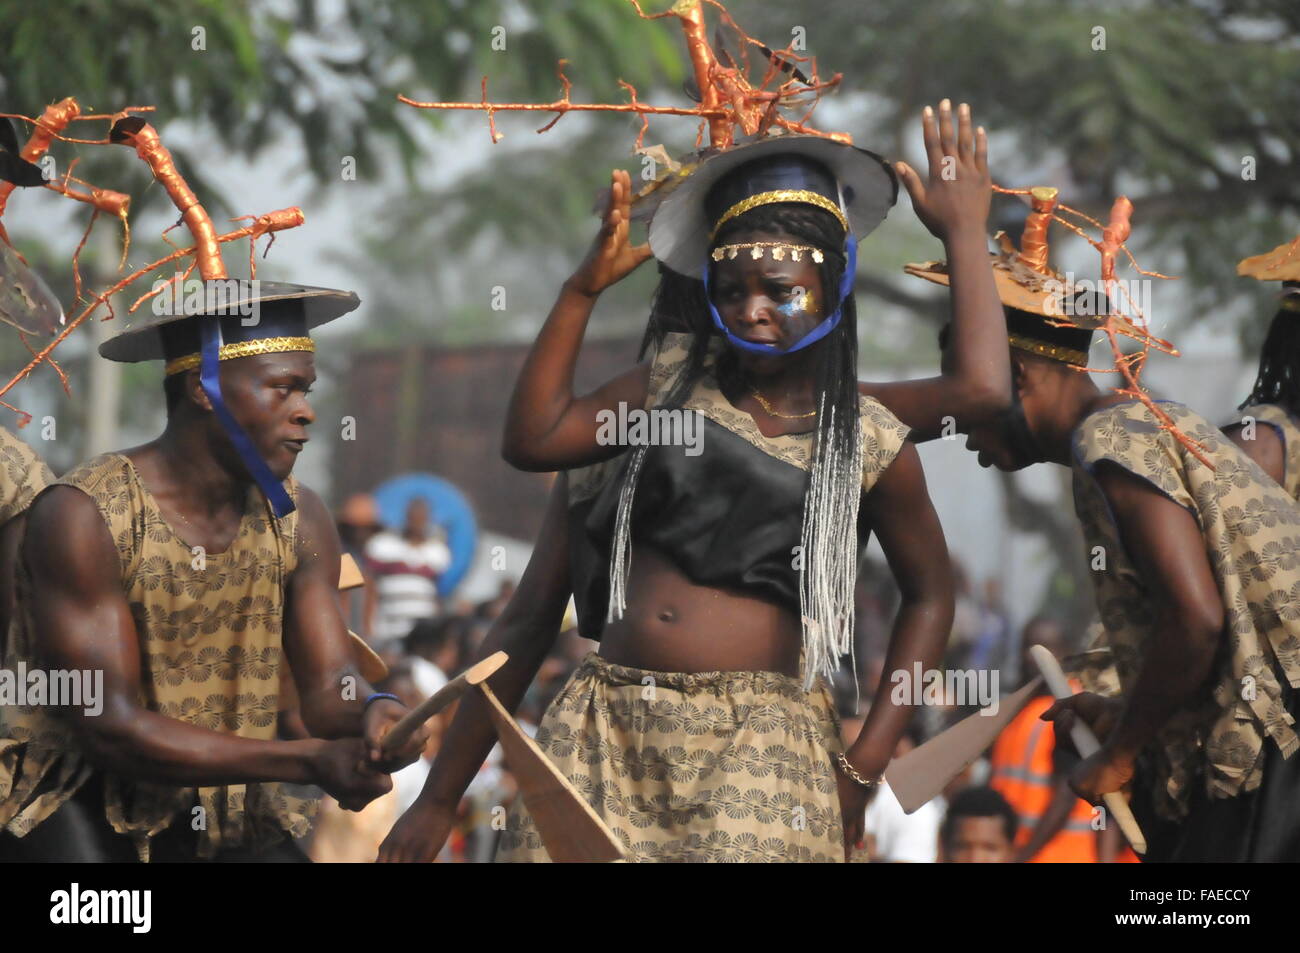 (151228)--CALABAR(NIGERIA), 28. Dezember 2015 (Xinhua)--Darsteller tanzen während der Parade von Calabar Karneval in Calabar, die Hauptstadt des Cross River State im südöstlichen Nigeria, 28. Dezember 2015. Calabar Karneval, markiert auch "Afrikas größte Street Party", begann am Montag in Calabar und Zehntausende von lokalen Bewohner Festzug. Künstler aus Italien, Brasilien, Spanien, Kenia und Simbabwe nahmen an der Veranstaltung teil. (Xinhua/Jiang Xintong) Stockfoto